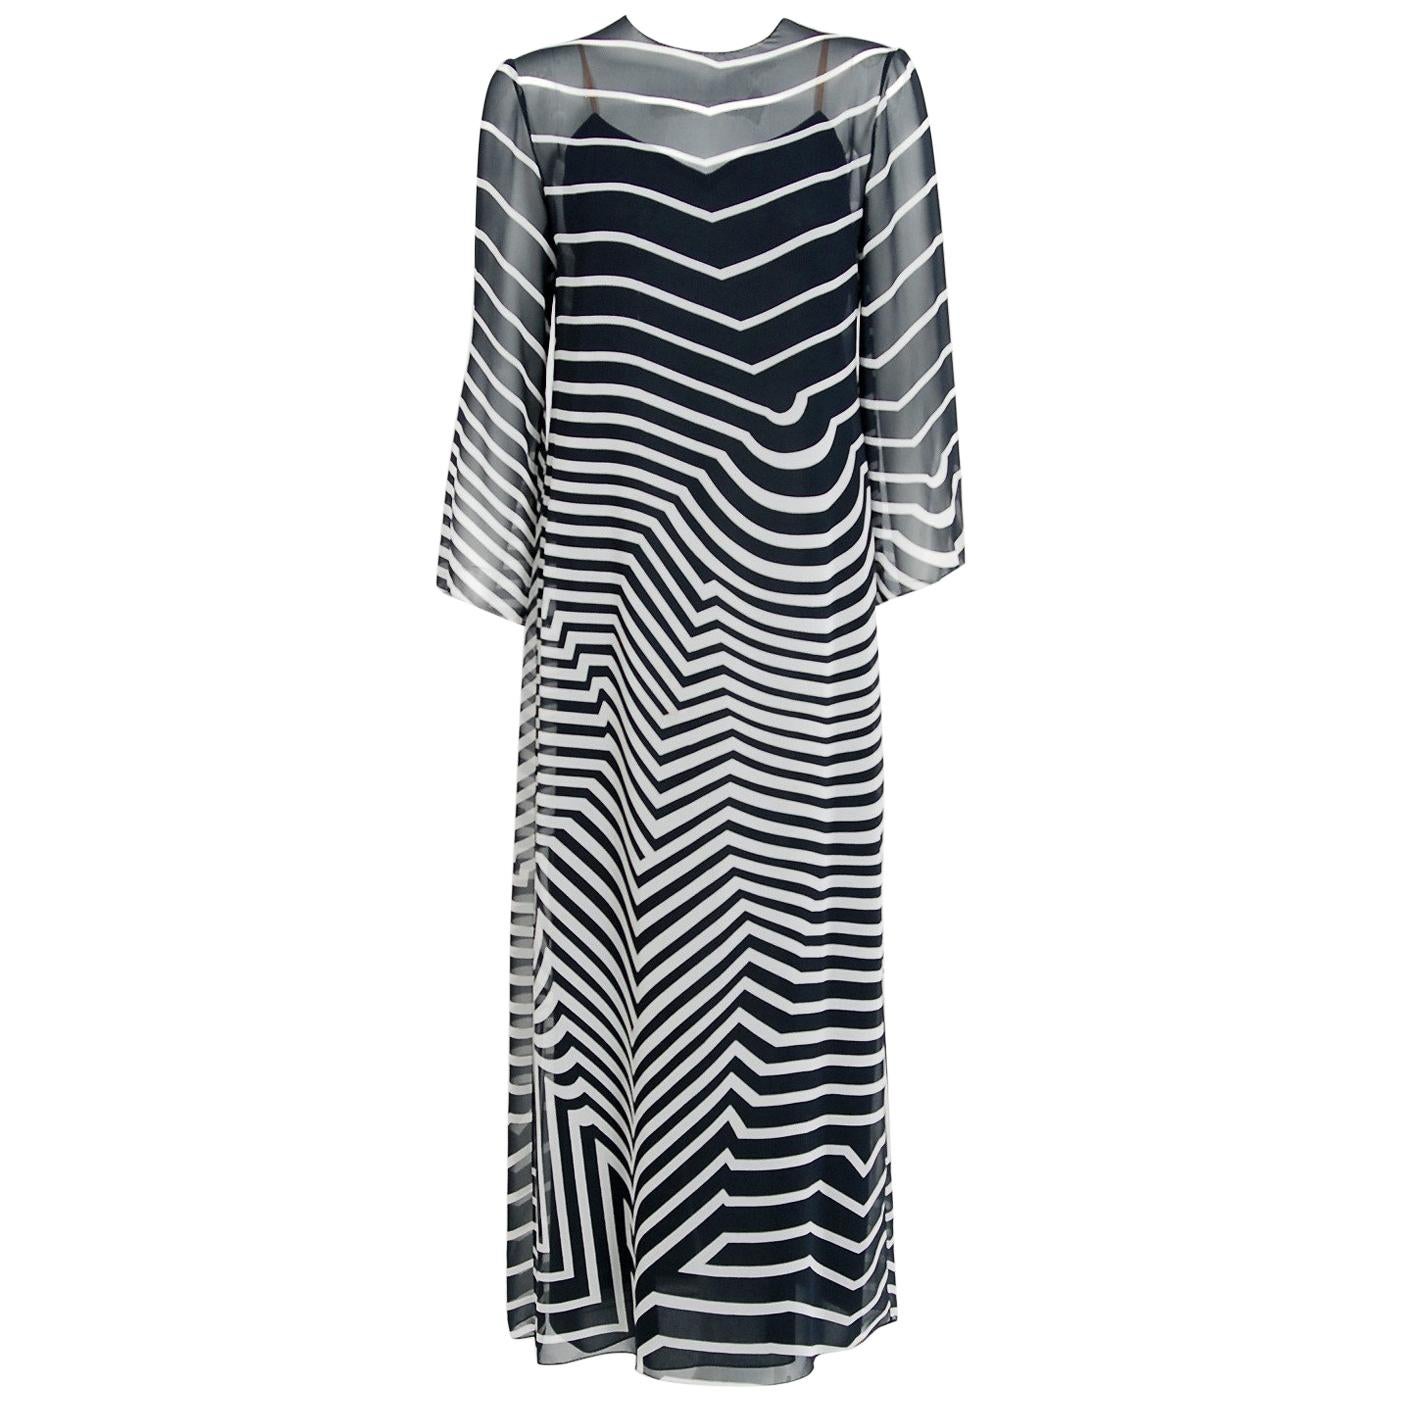 Halston Couture Black and White Graphic Illusion Silk Chiffon Maxi Dress, 1977